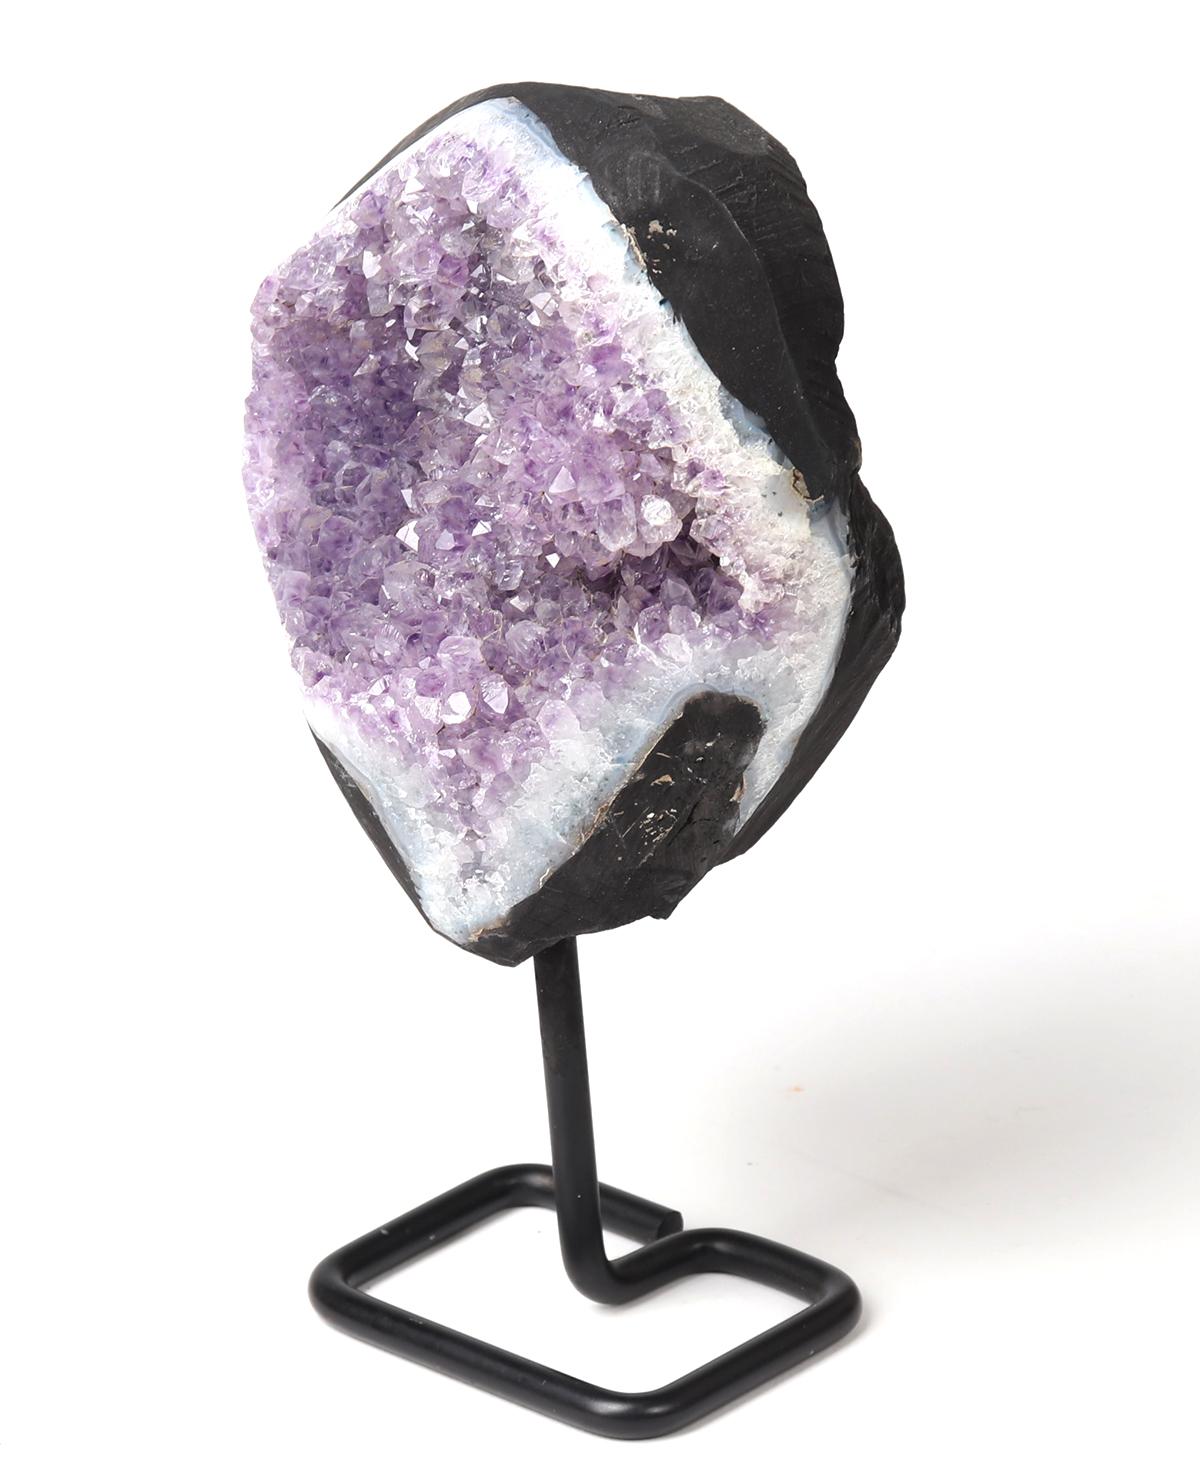 Amethyst Crystal "Eye" Geode